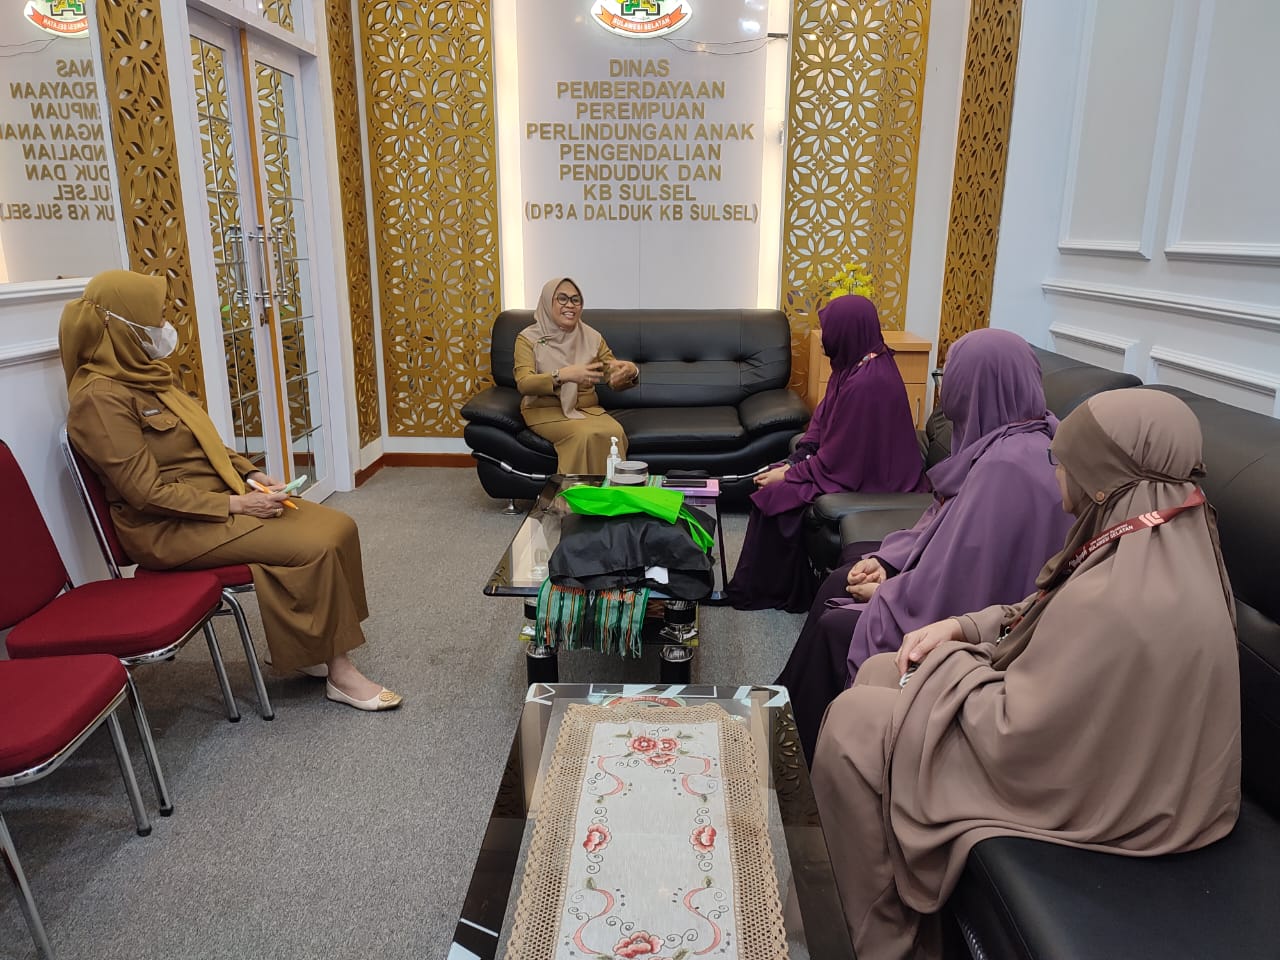 Muslimah Wahdah Islamiyah Jalin Silaturahim dengan Dinas Pemberdayaan Perempuan dan Perlindungan Anak Sulawesi Selatan